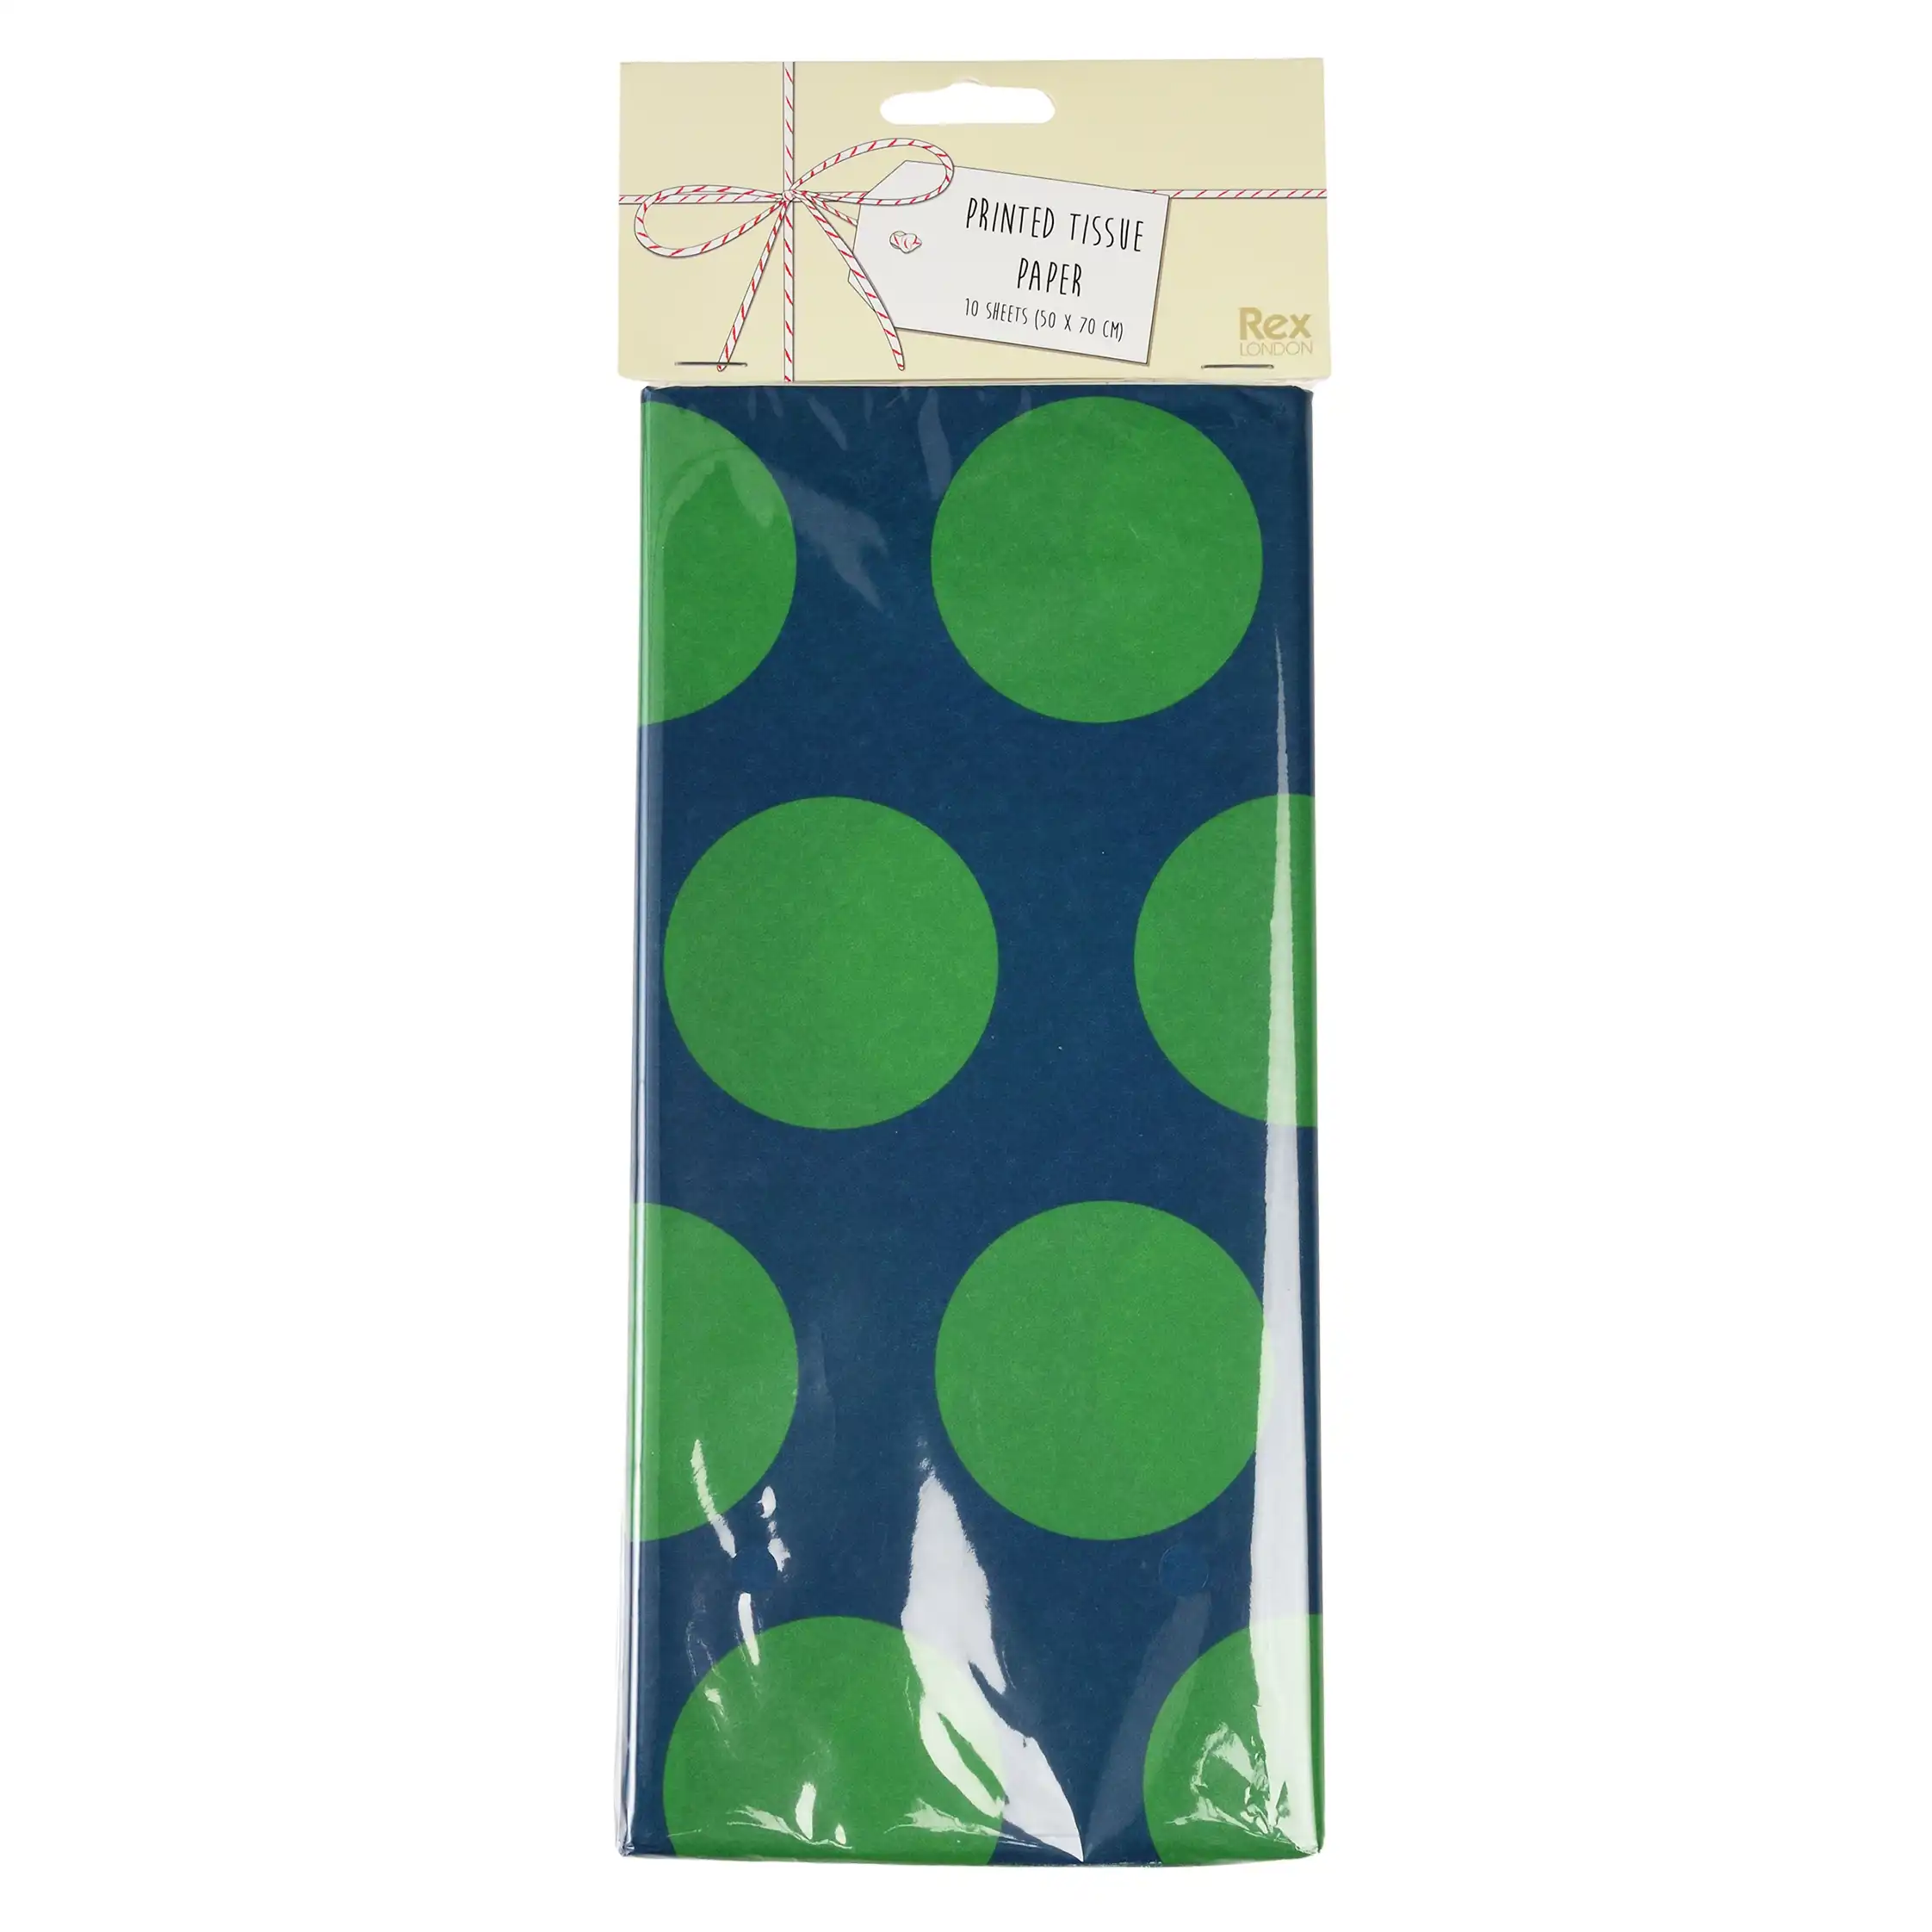 tissue paper (10 sheets) - green on blue spotlight